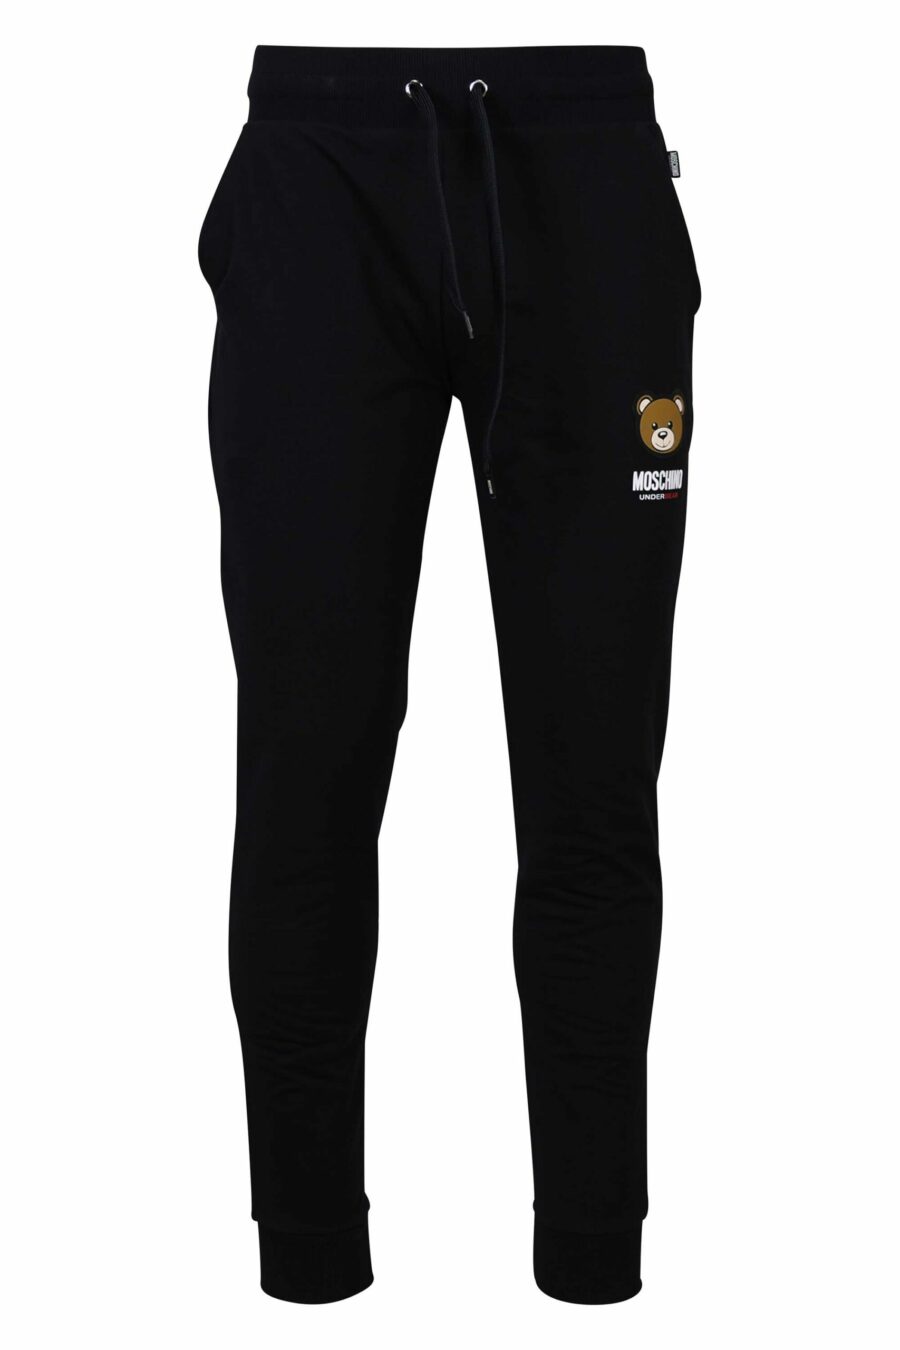 Pantalón de chándal negro con logo oso "underbear" en parche - 667113019949 scaled